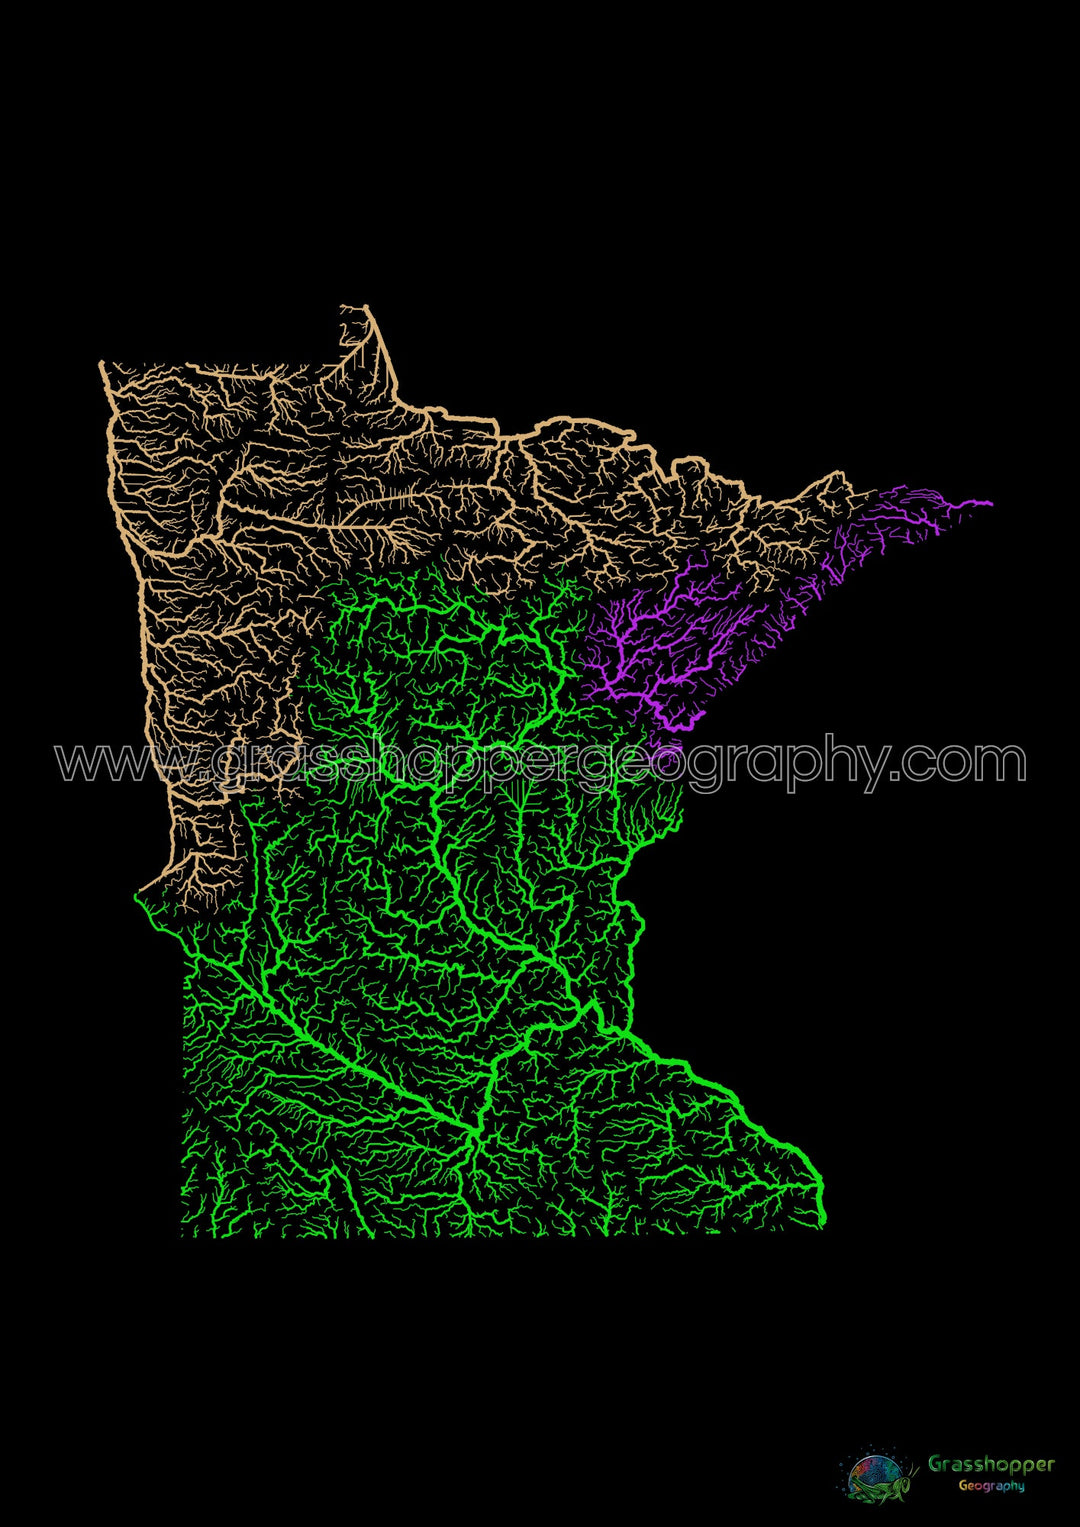 Minnesota - Carte du bassin fluvial, arc-en-ciel sur noir - Fine Art Print